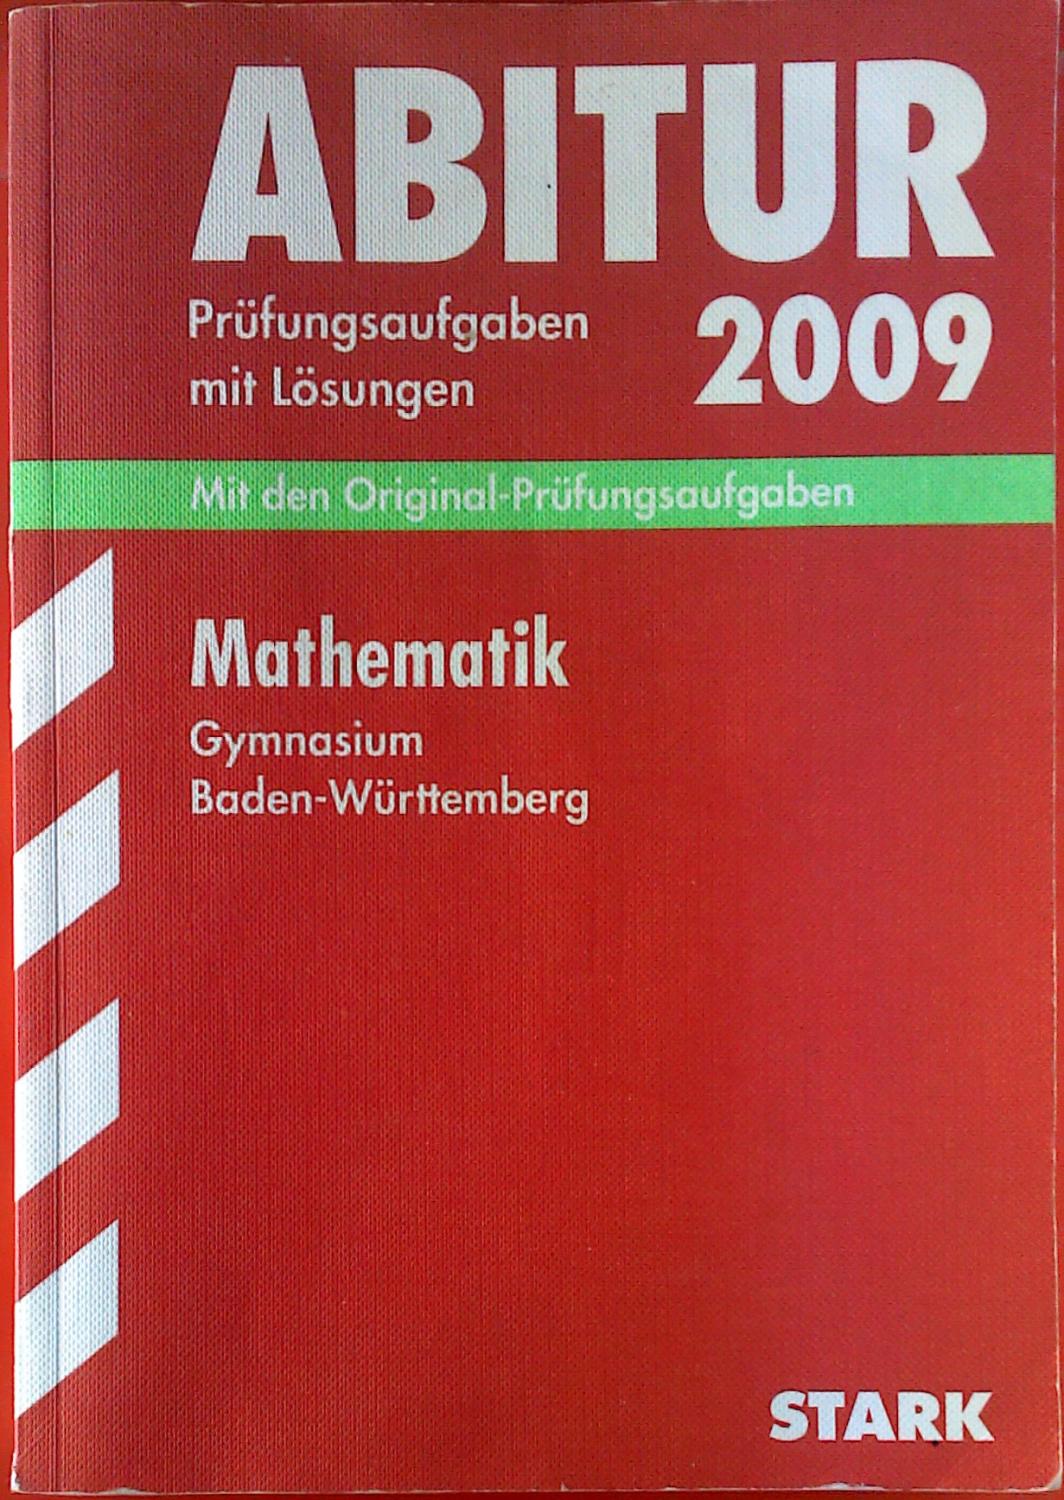 Abitur 2009. Prüfungsaufgaben mit Lösungen. Mit den Original-Prüfungsaufgaben. Mathematik. Gymnasium Baden-Württemberg, 2004 - 2008. - Raimund Ordowski